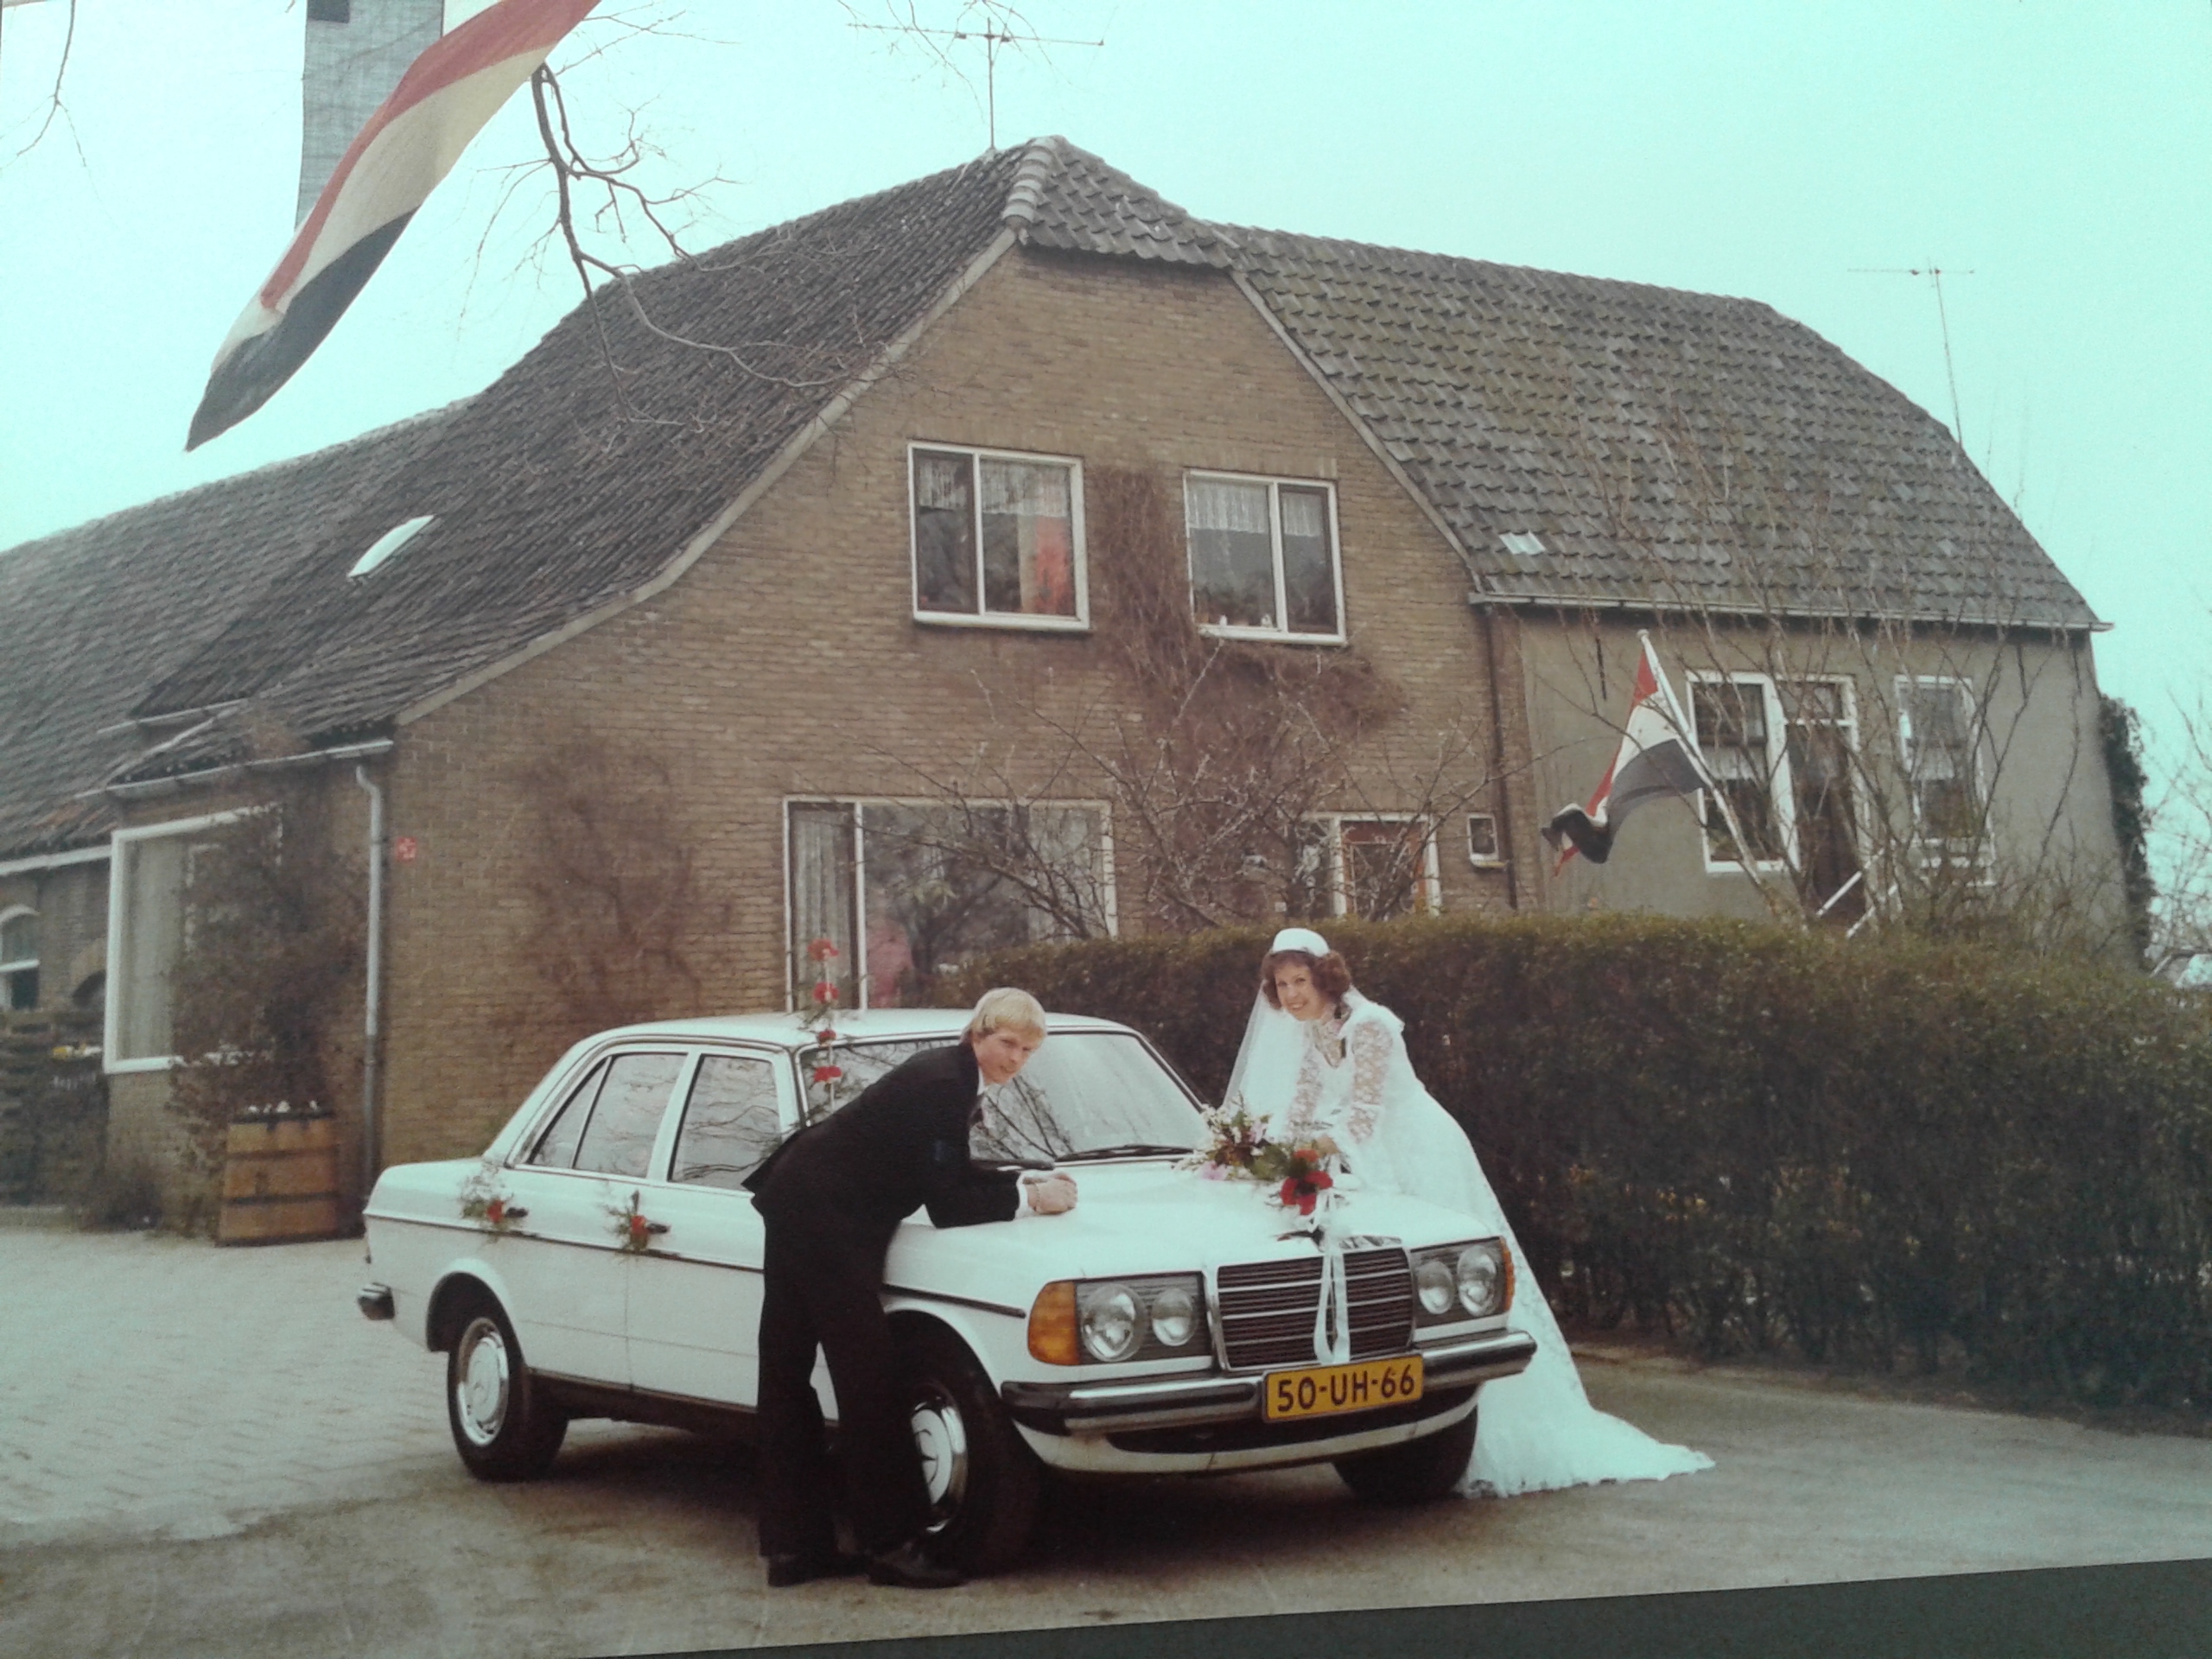 Huwelijk Adriana Keijzer & Adriaan Herbert 1980. Voor de boerderij aan de Burgerdijkseweg